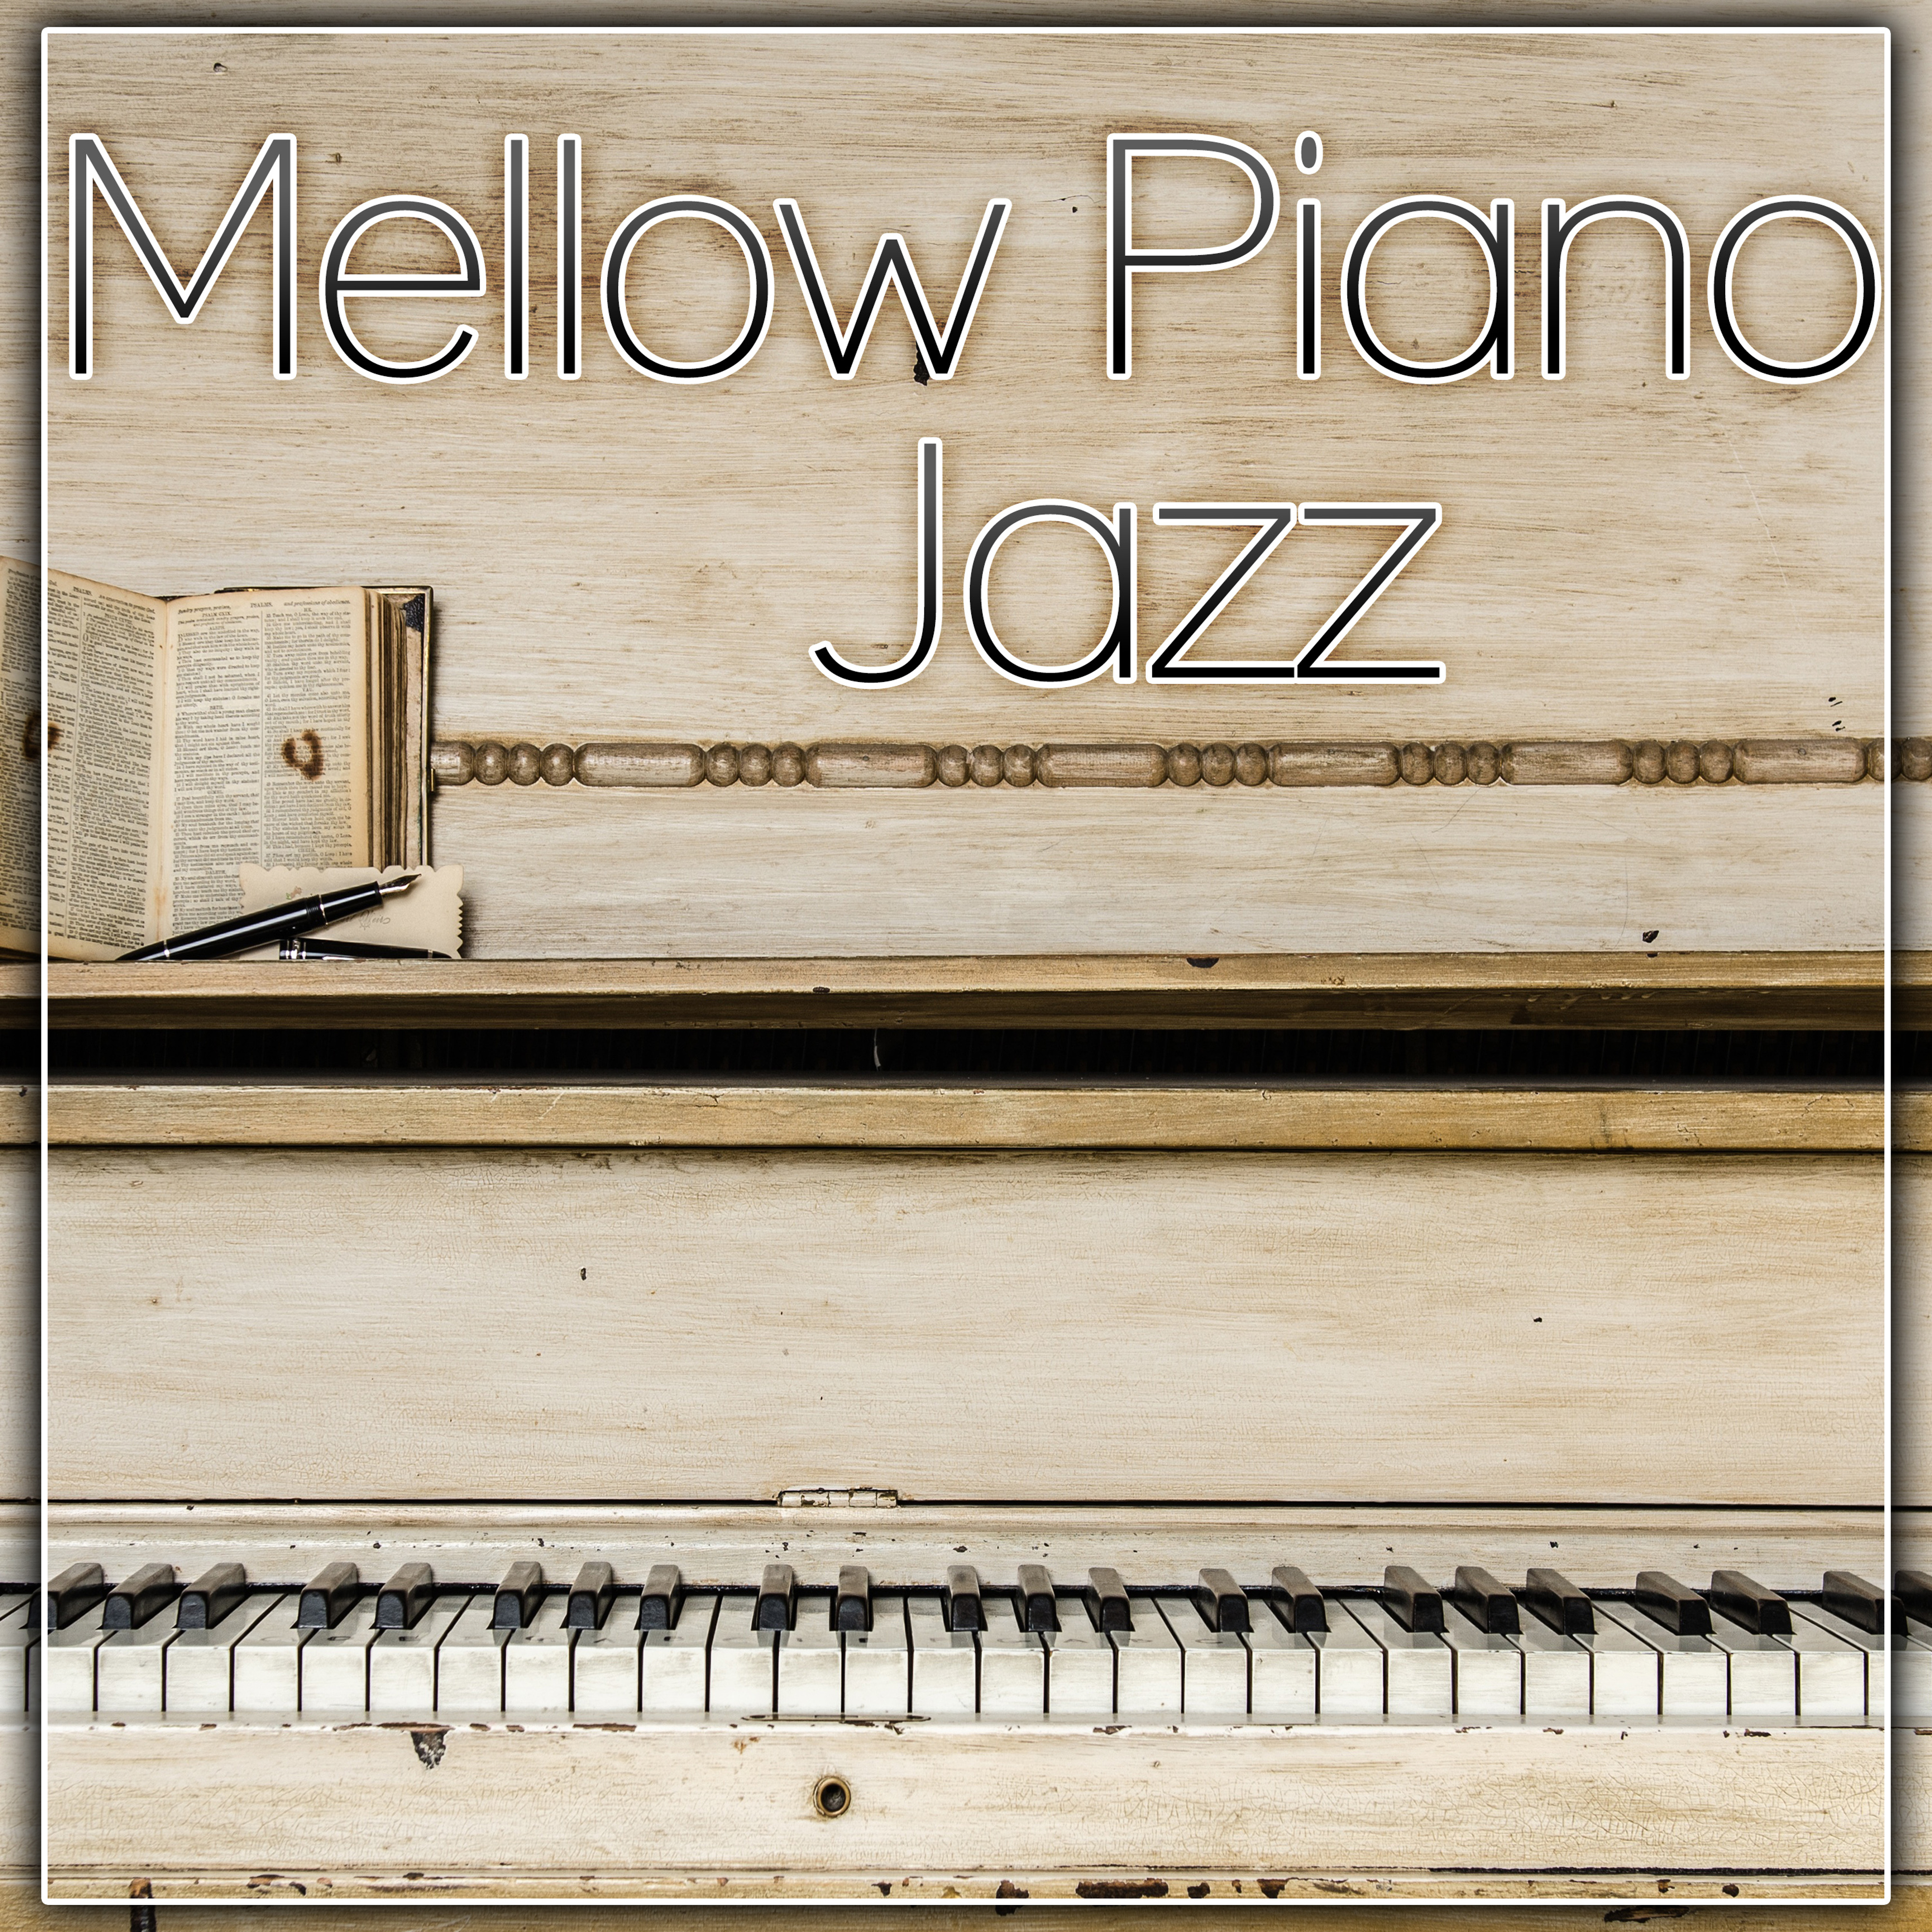 Mellow Piano Jazz - Feel Good, Soft Jazz Music, Calm Jazz Sounds, Instrumental Piano Jazz